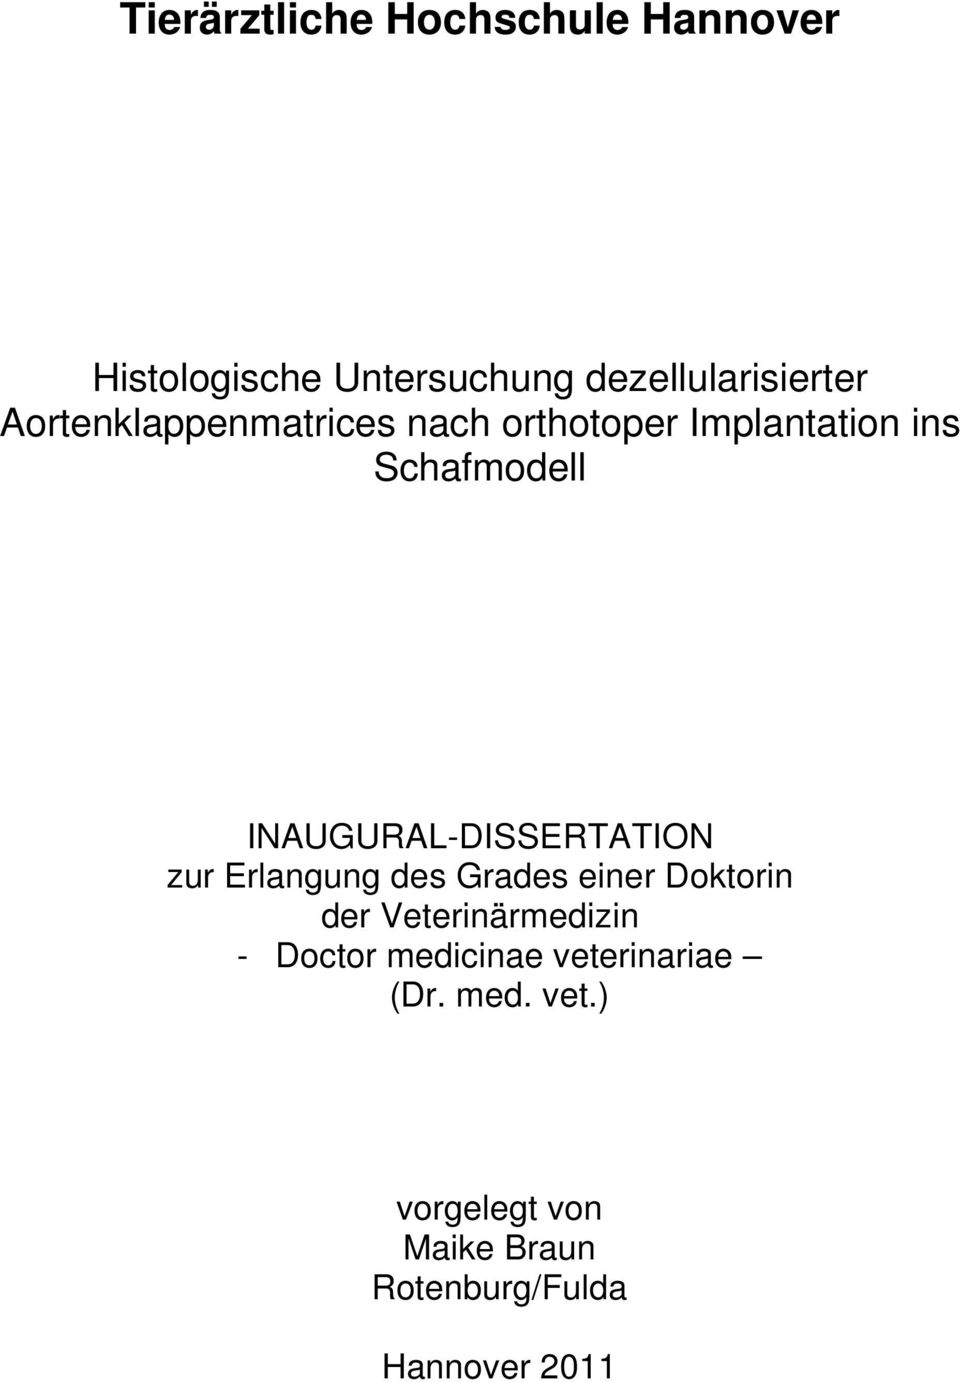 INAUGURAL-DISSERTATION zur Erlangung des Grades einer Doktorin der Veterinärmedizin